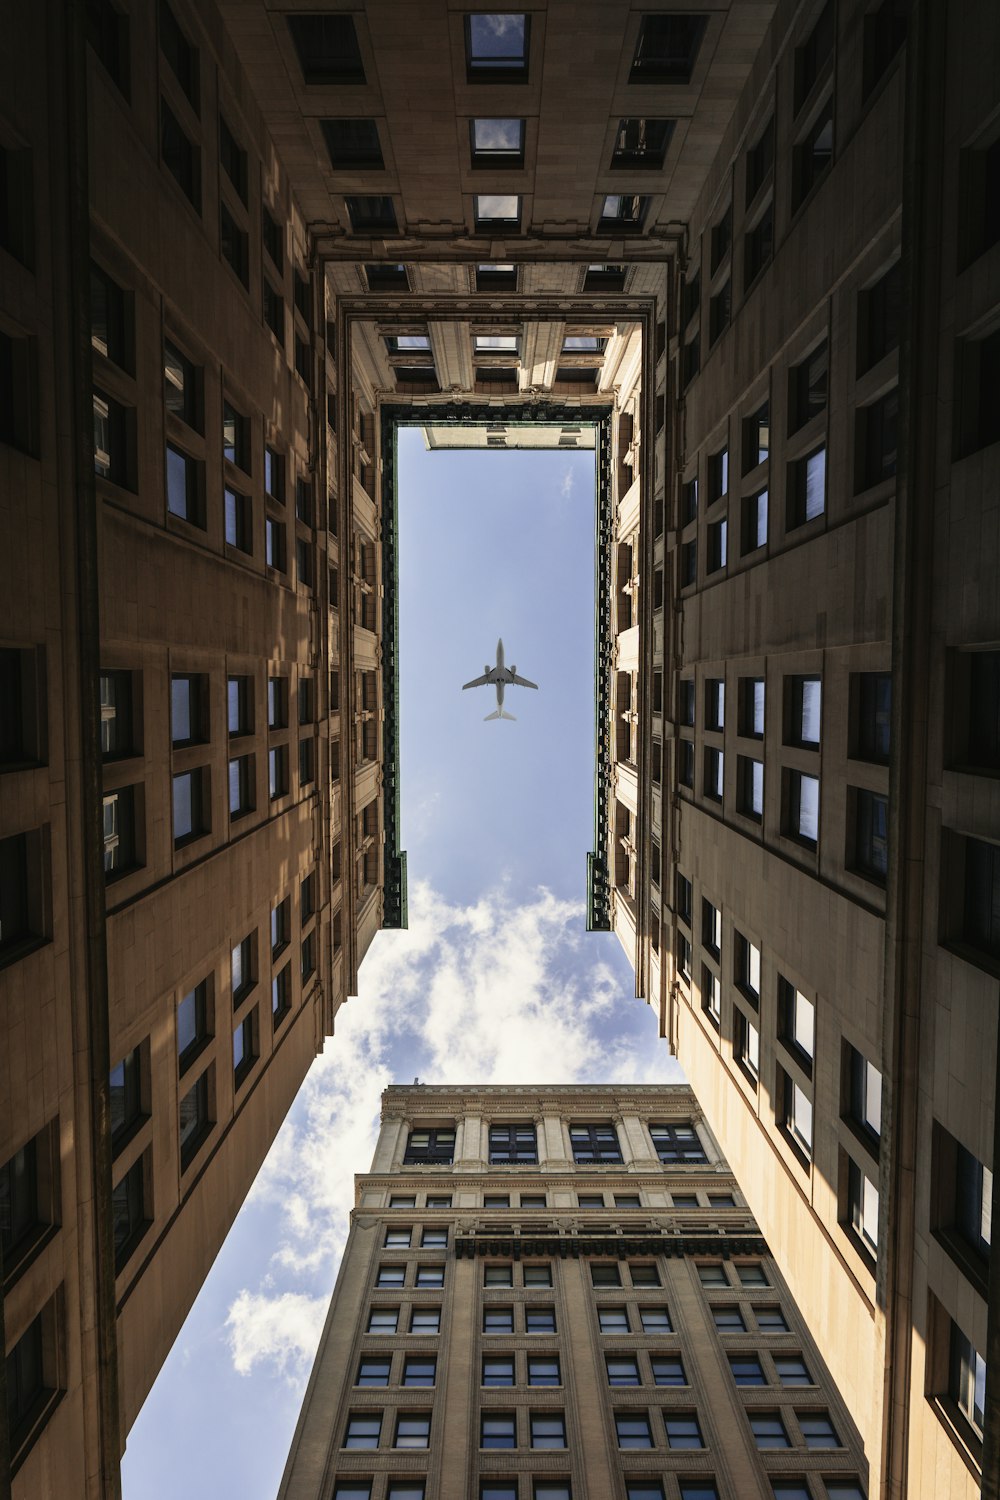 Avión volando en lo alto de edificios de gran altura